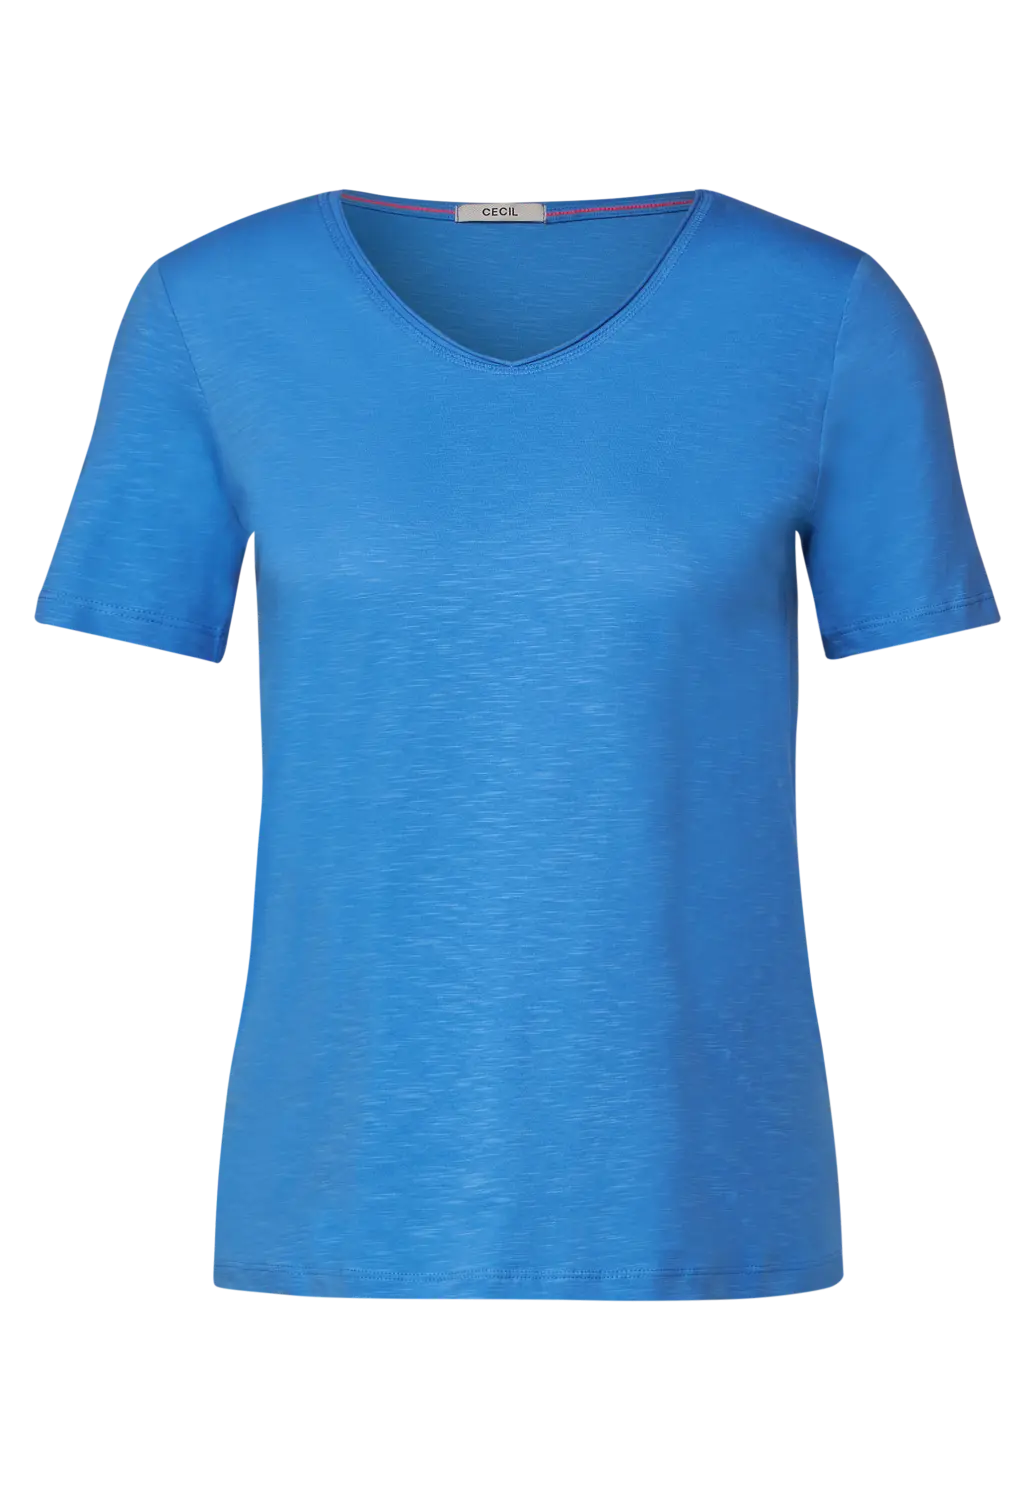 - Marina Blue - / Unifarbe Cotton in CECIL Basic | Blau Blues T-Shirt